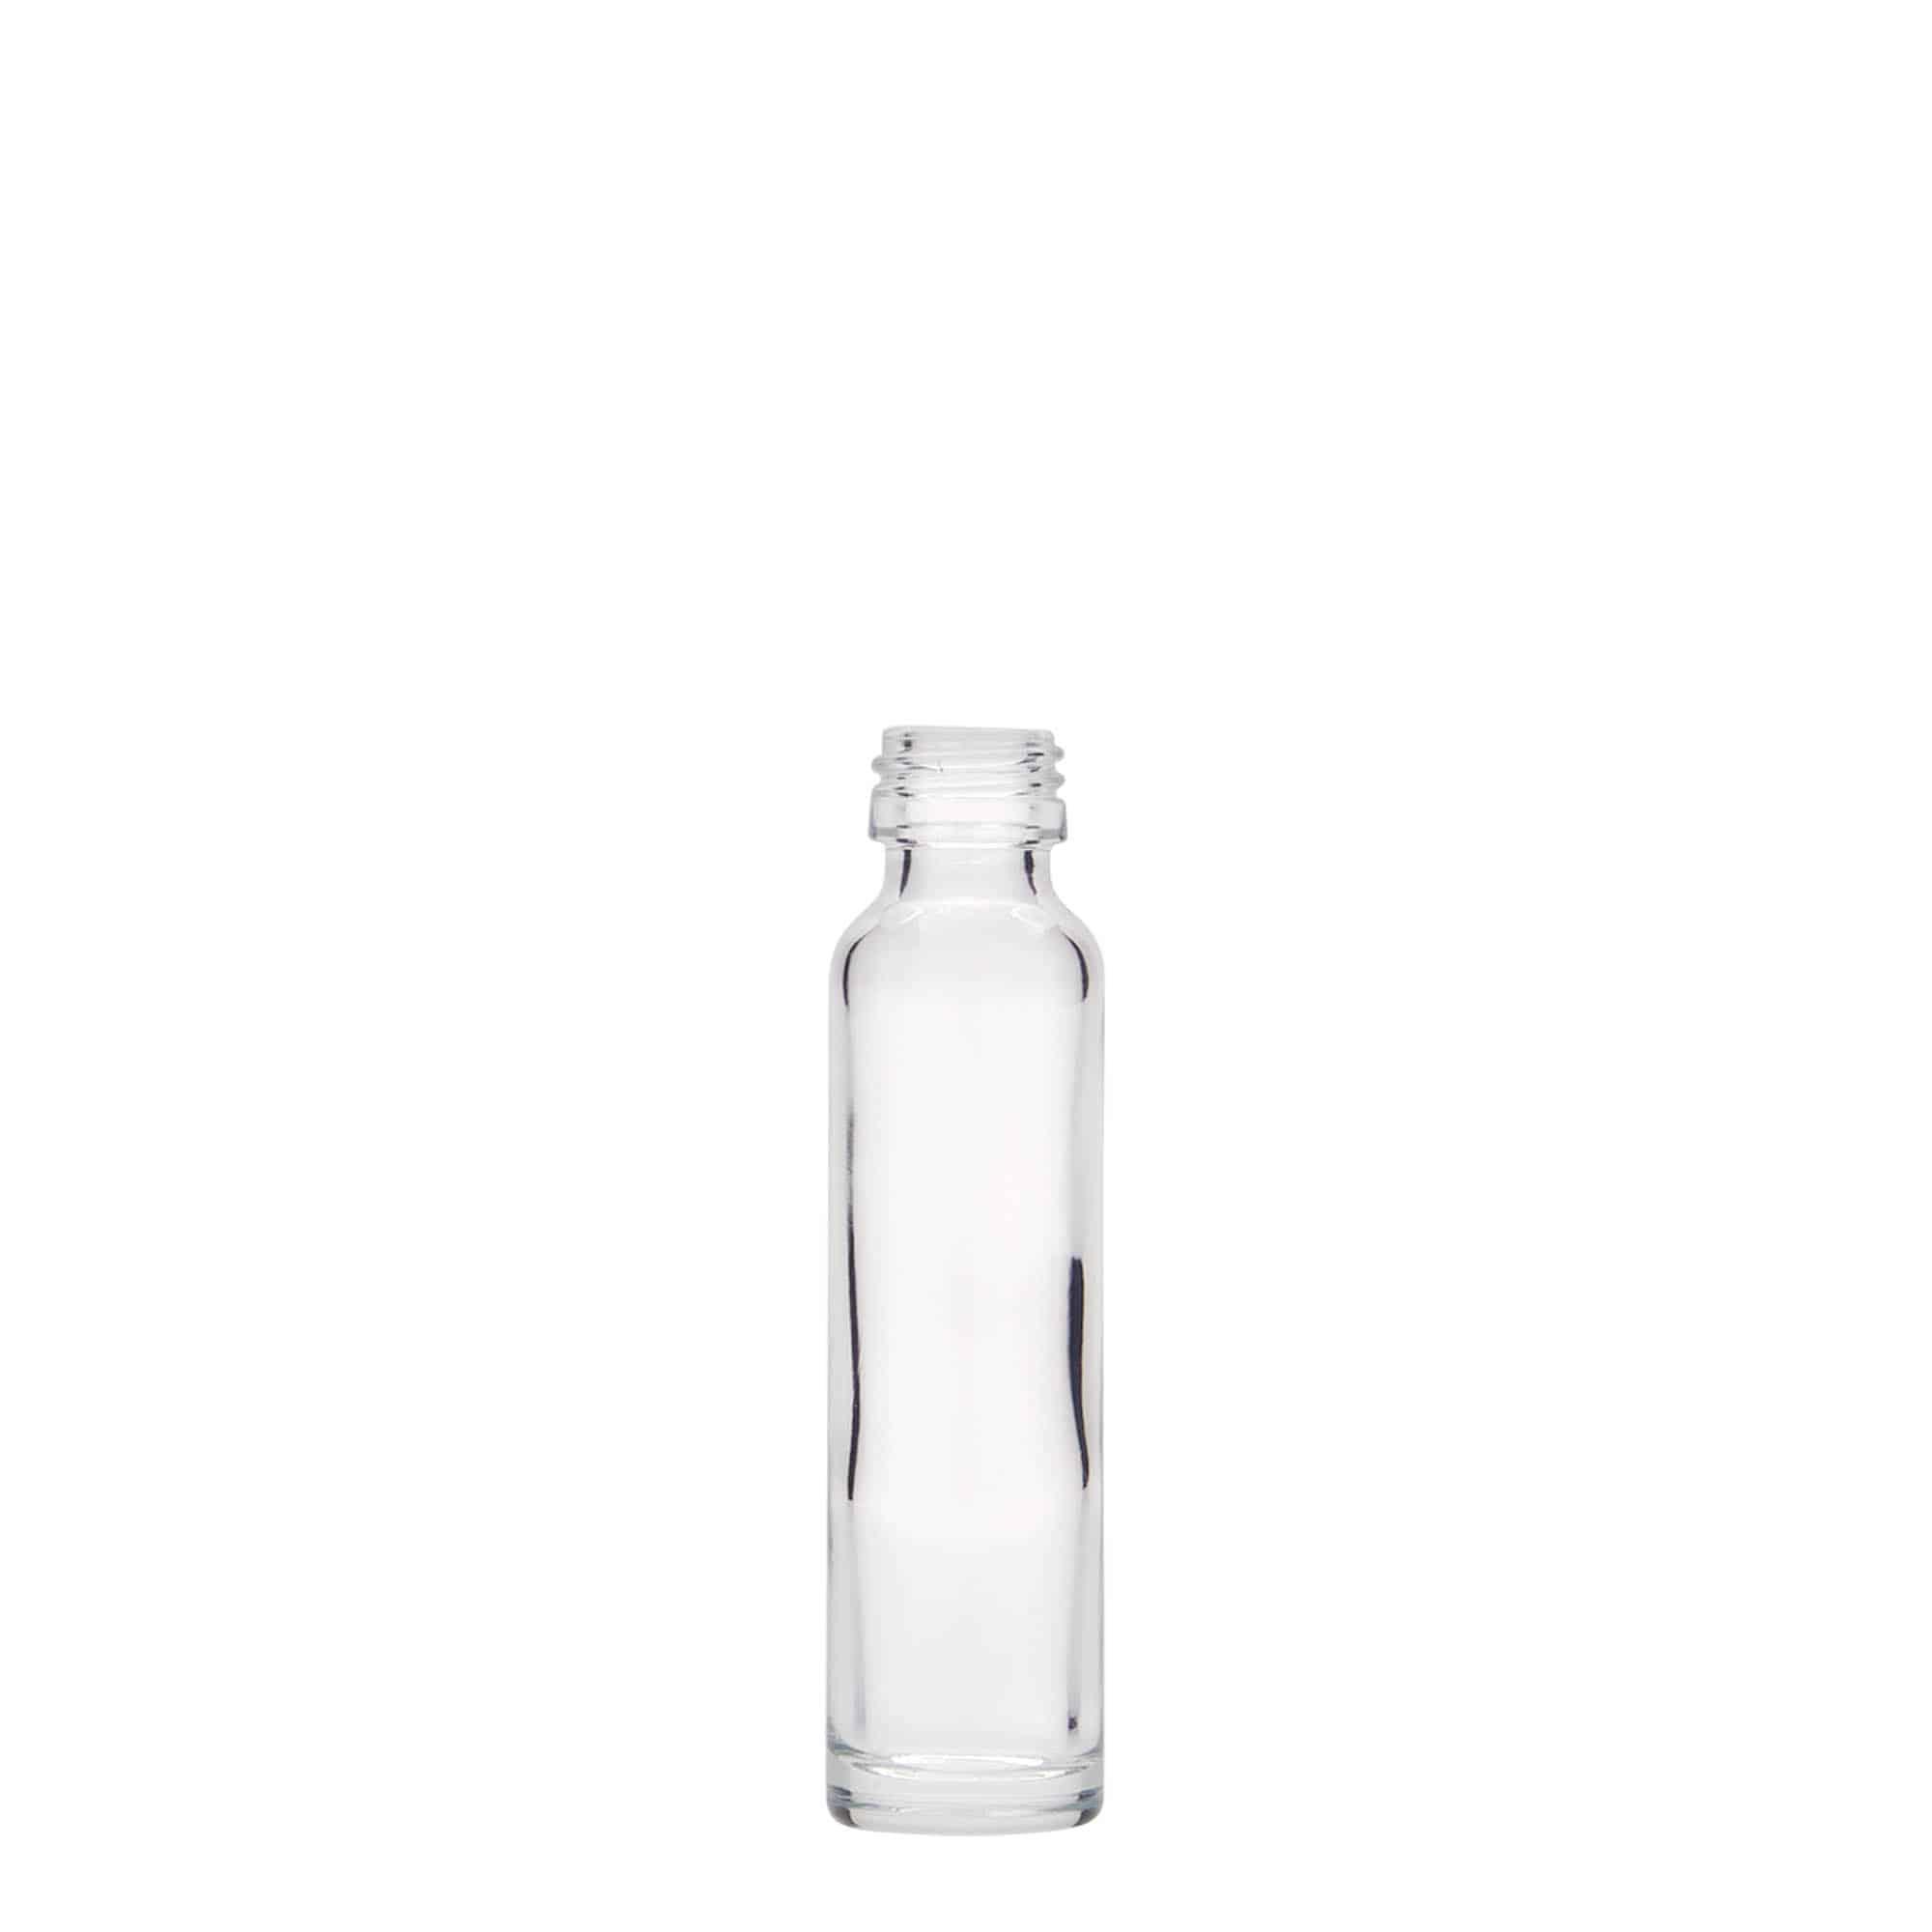 20 ml Krugflasche, Glas, Mündung: PP 18